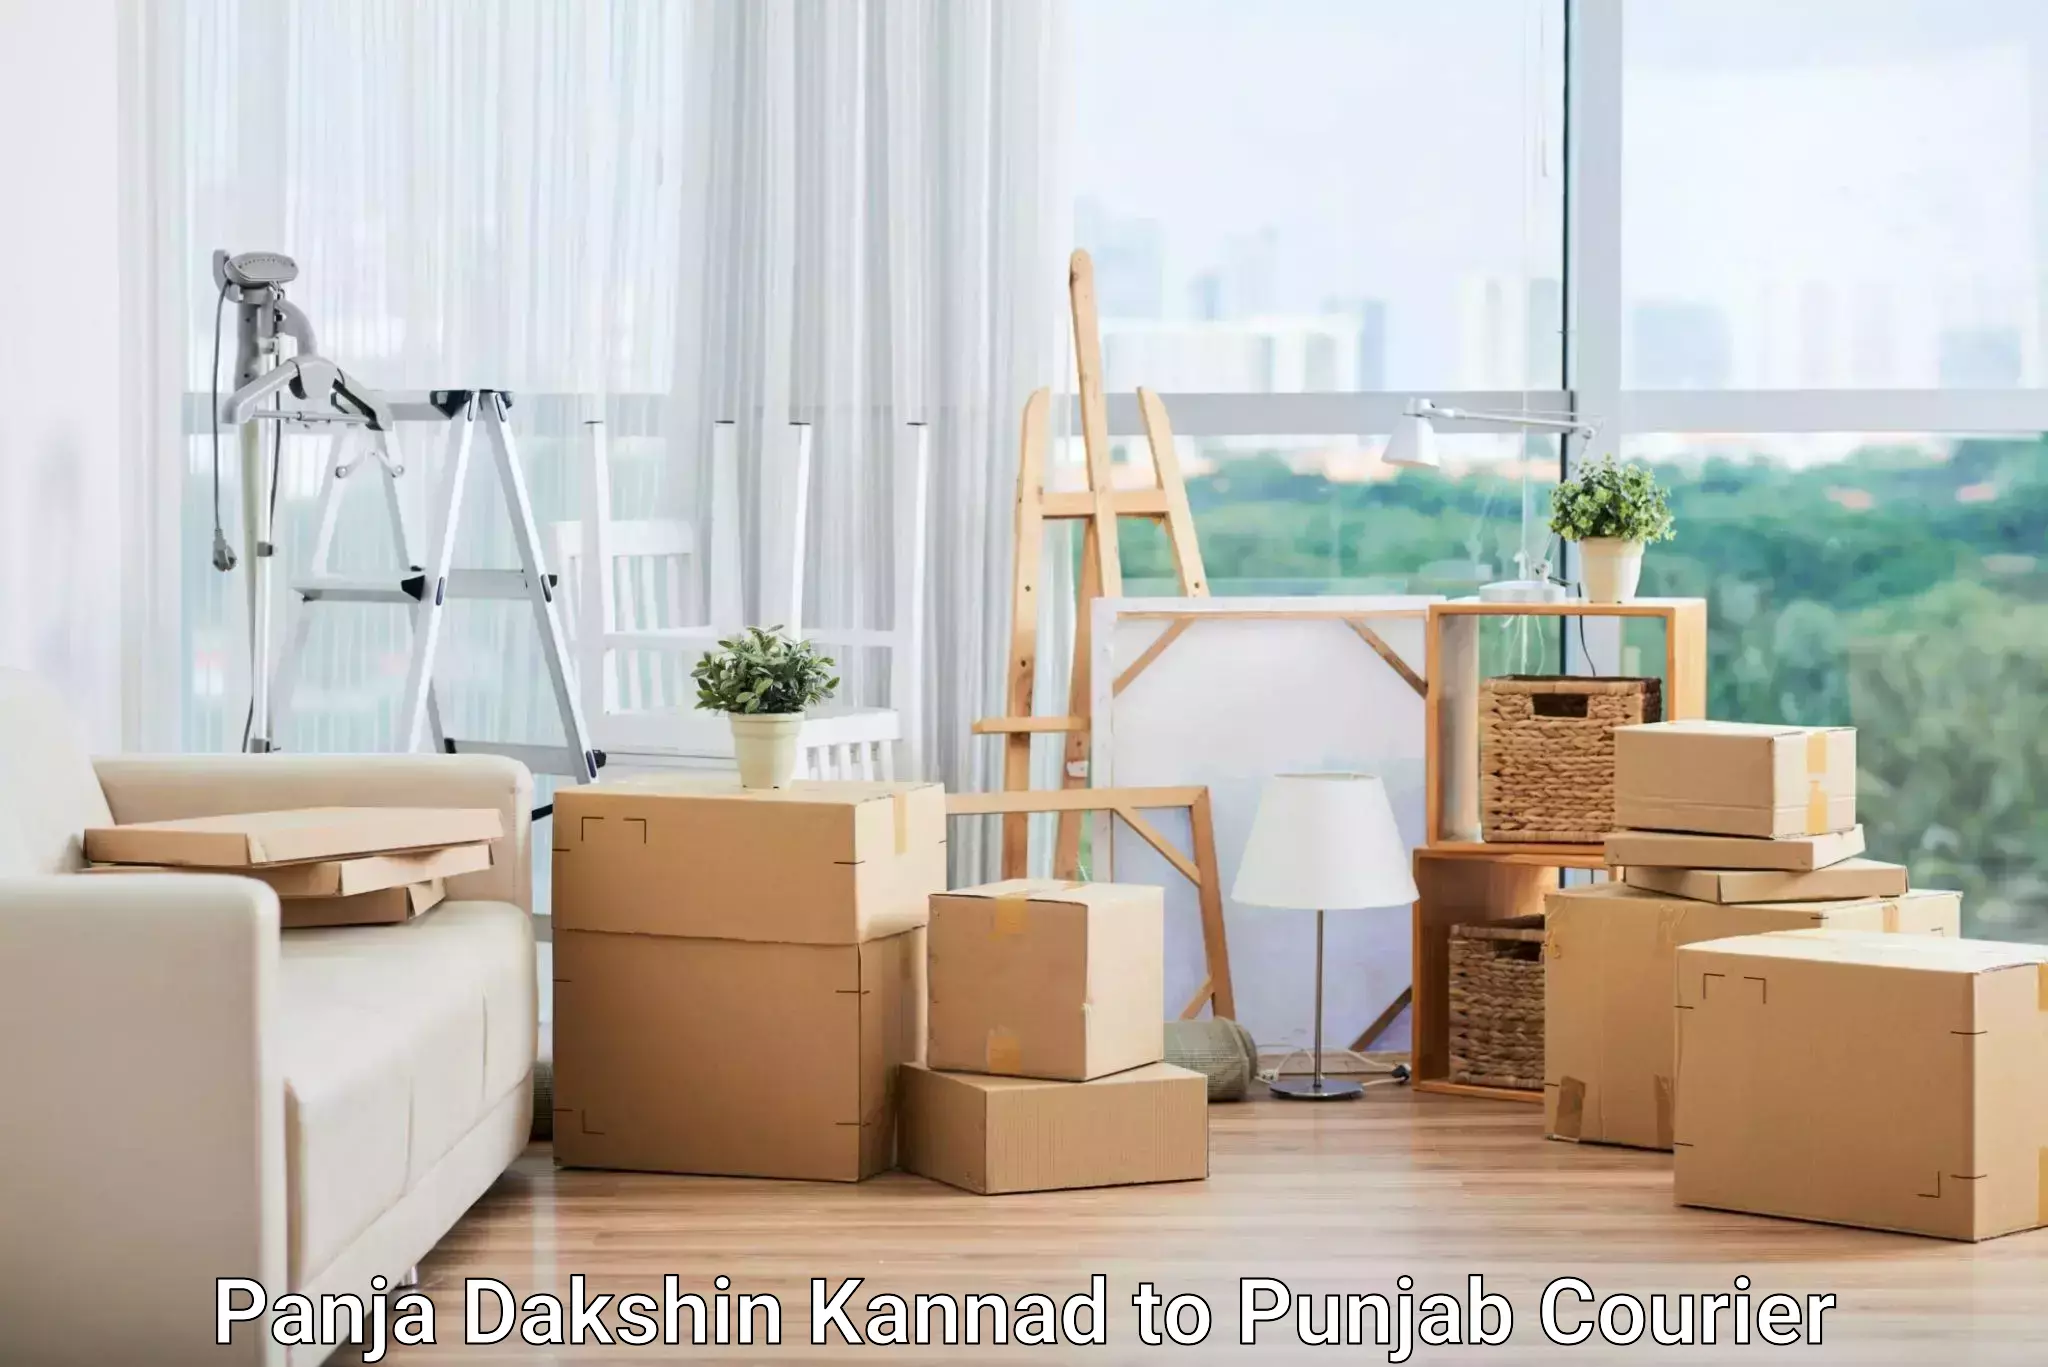 Modern parcel services Panja Dakshin Kannad to Punjab